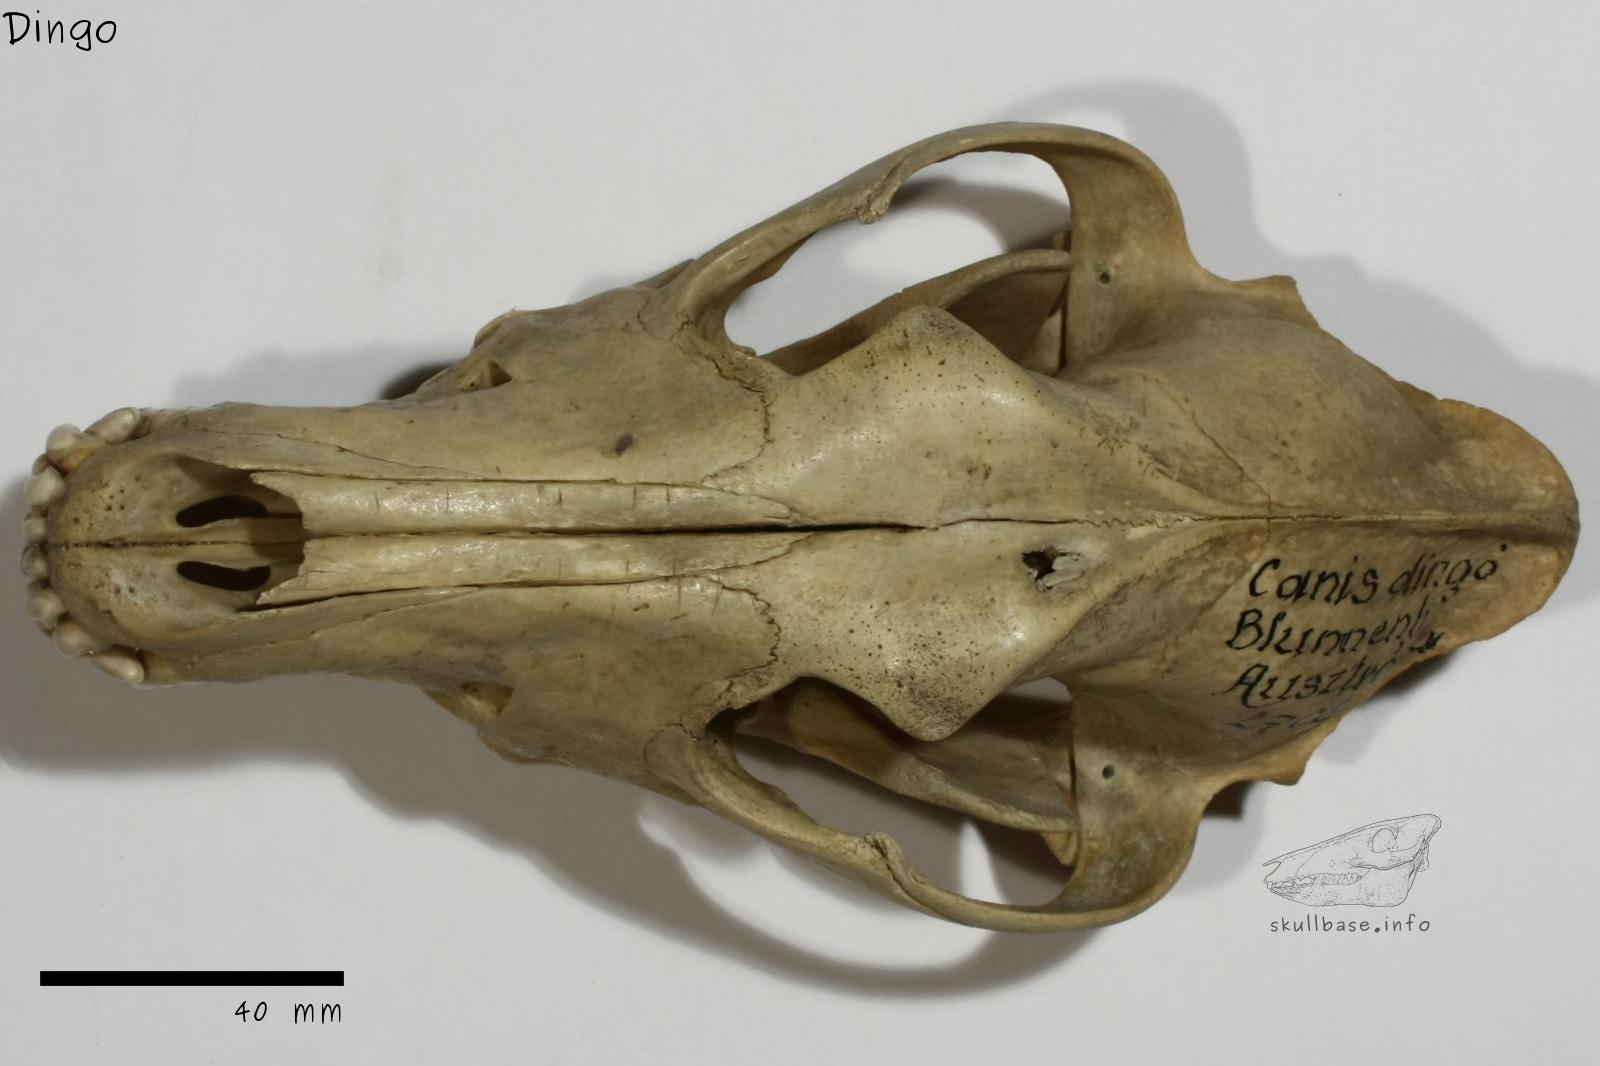 Dingo (Canis lupus dingo) skull dorsal view